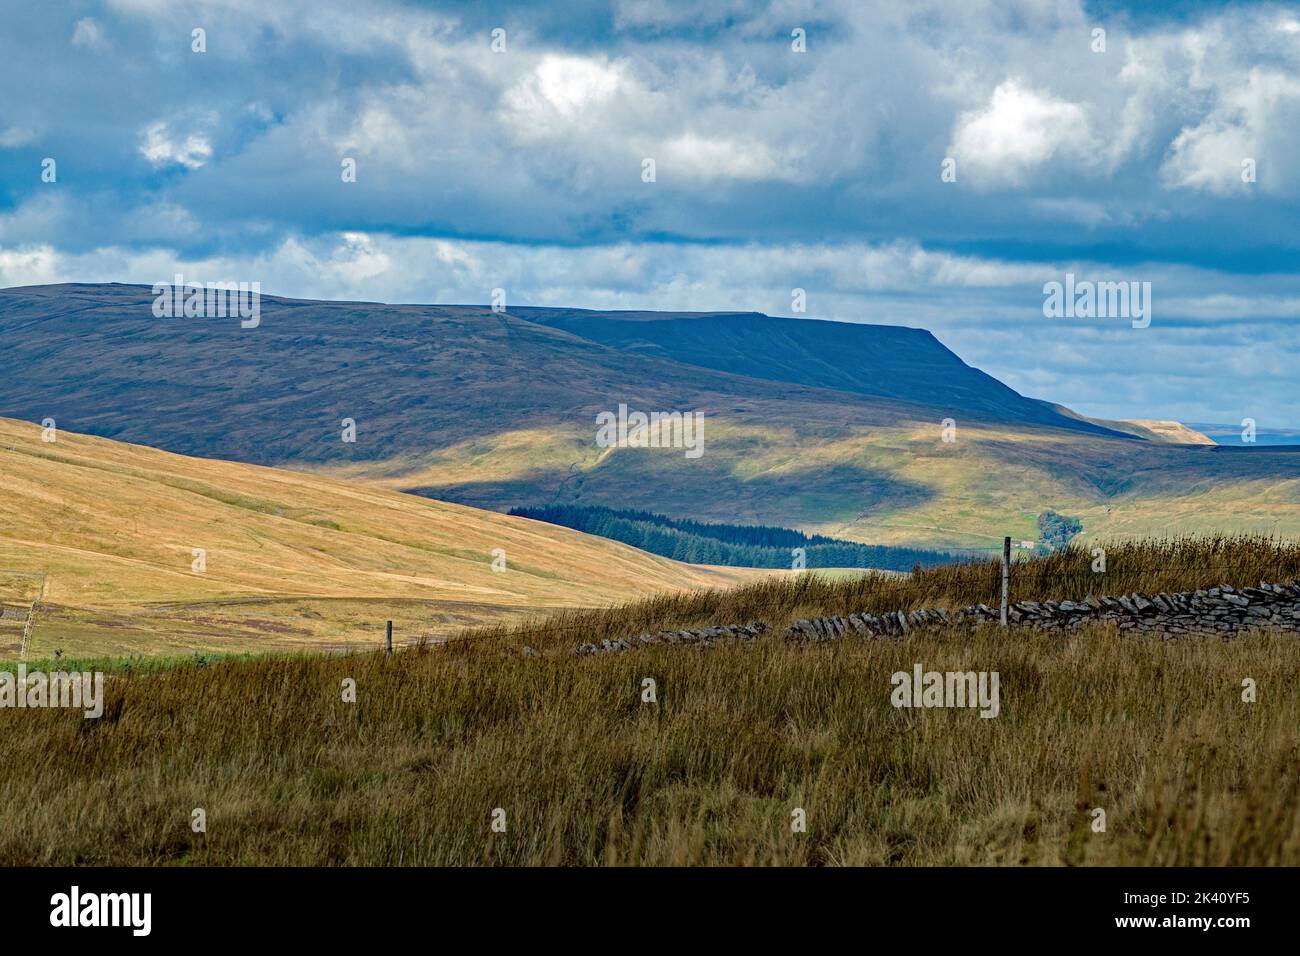 La vue du paysage vers Wild Boar est tombée de la route Coal reliant Garsdale et Dent chemins de fer stationsYorkshire Dales Landscape, Cumbria Landscape Banque D'Images